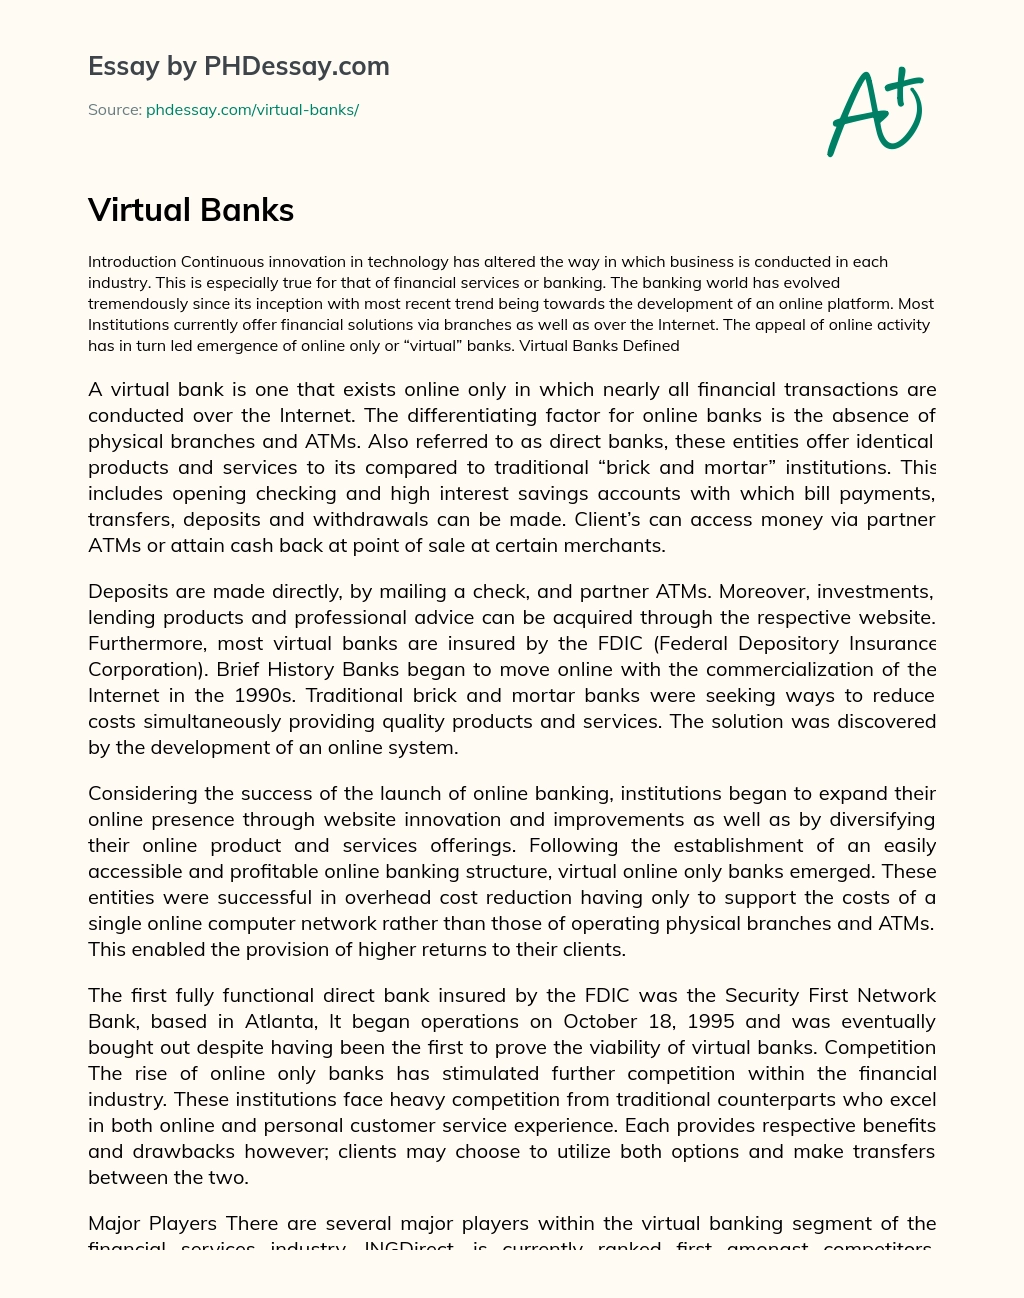 Virtual Banks essay